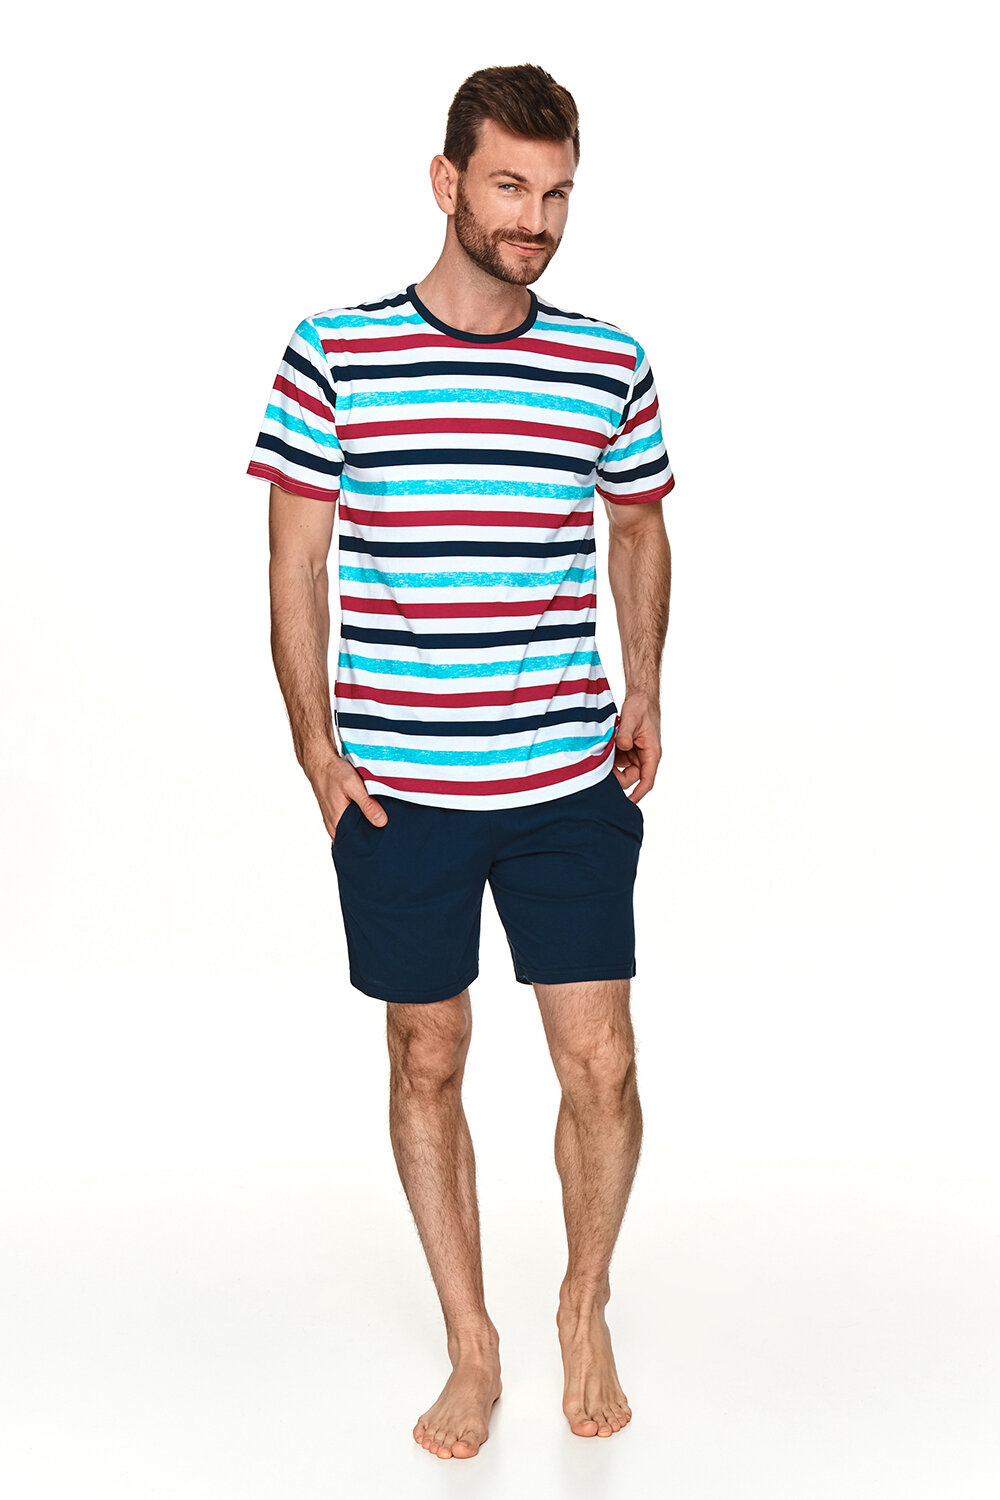 Пижама мужская TARO Jura 2729-01, футболка и шорты, темно-синий, хлопок 100% (Размер: L) - фотография № 1